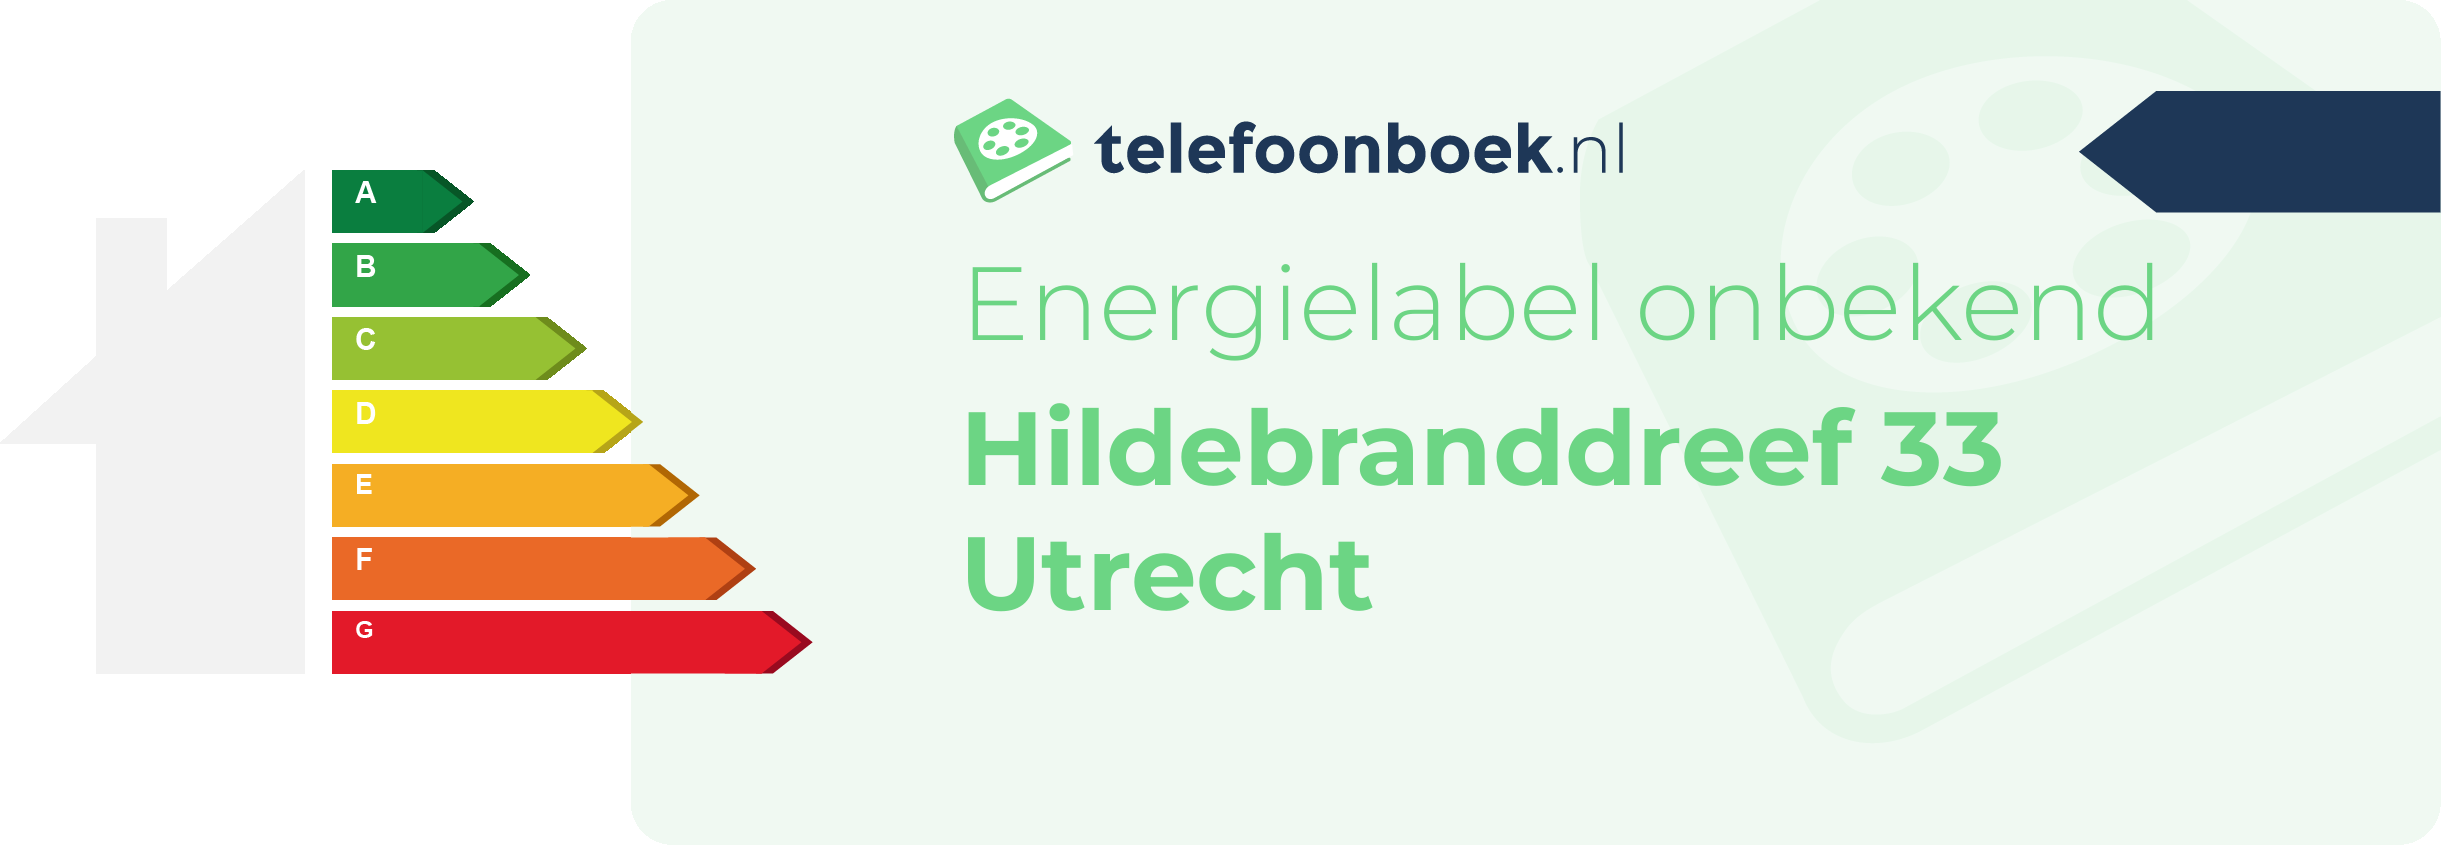 Energielabel Hildebranddreef 33 Utrecht